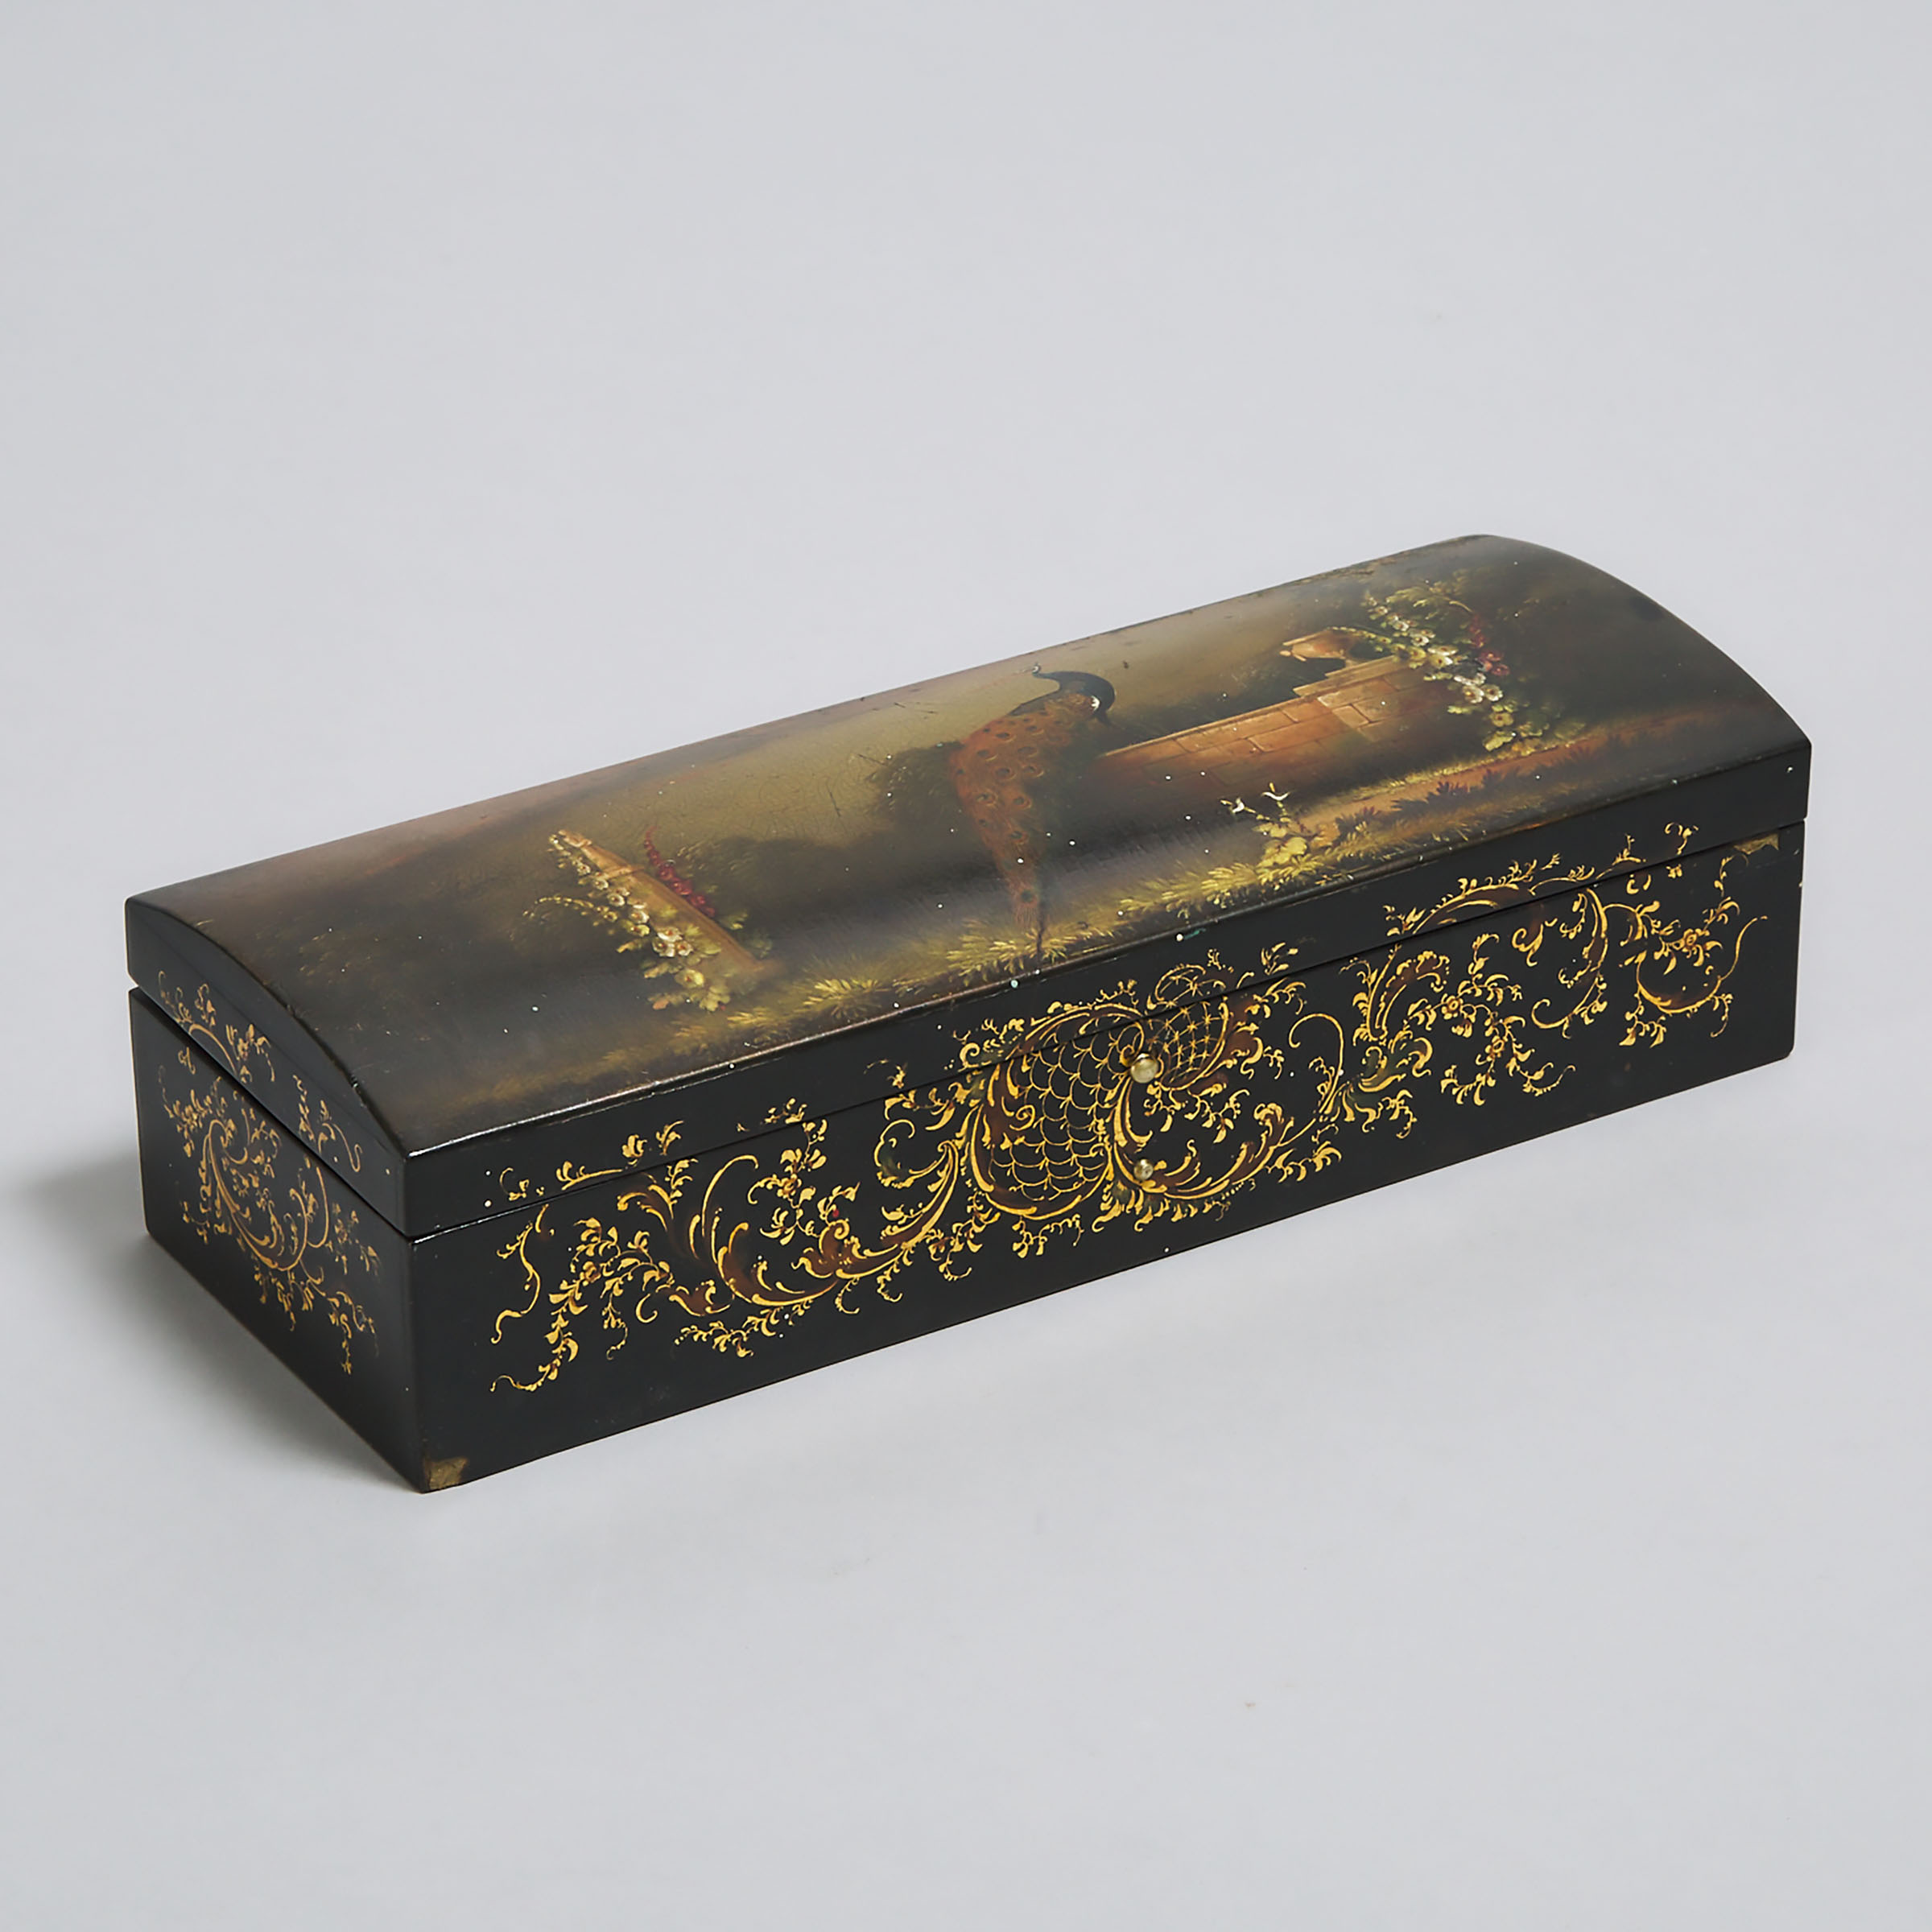 Jennens & Bettridge Painted Black Lacquer Papier Maché Glove Box, c.1870